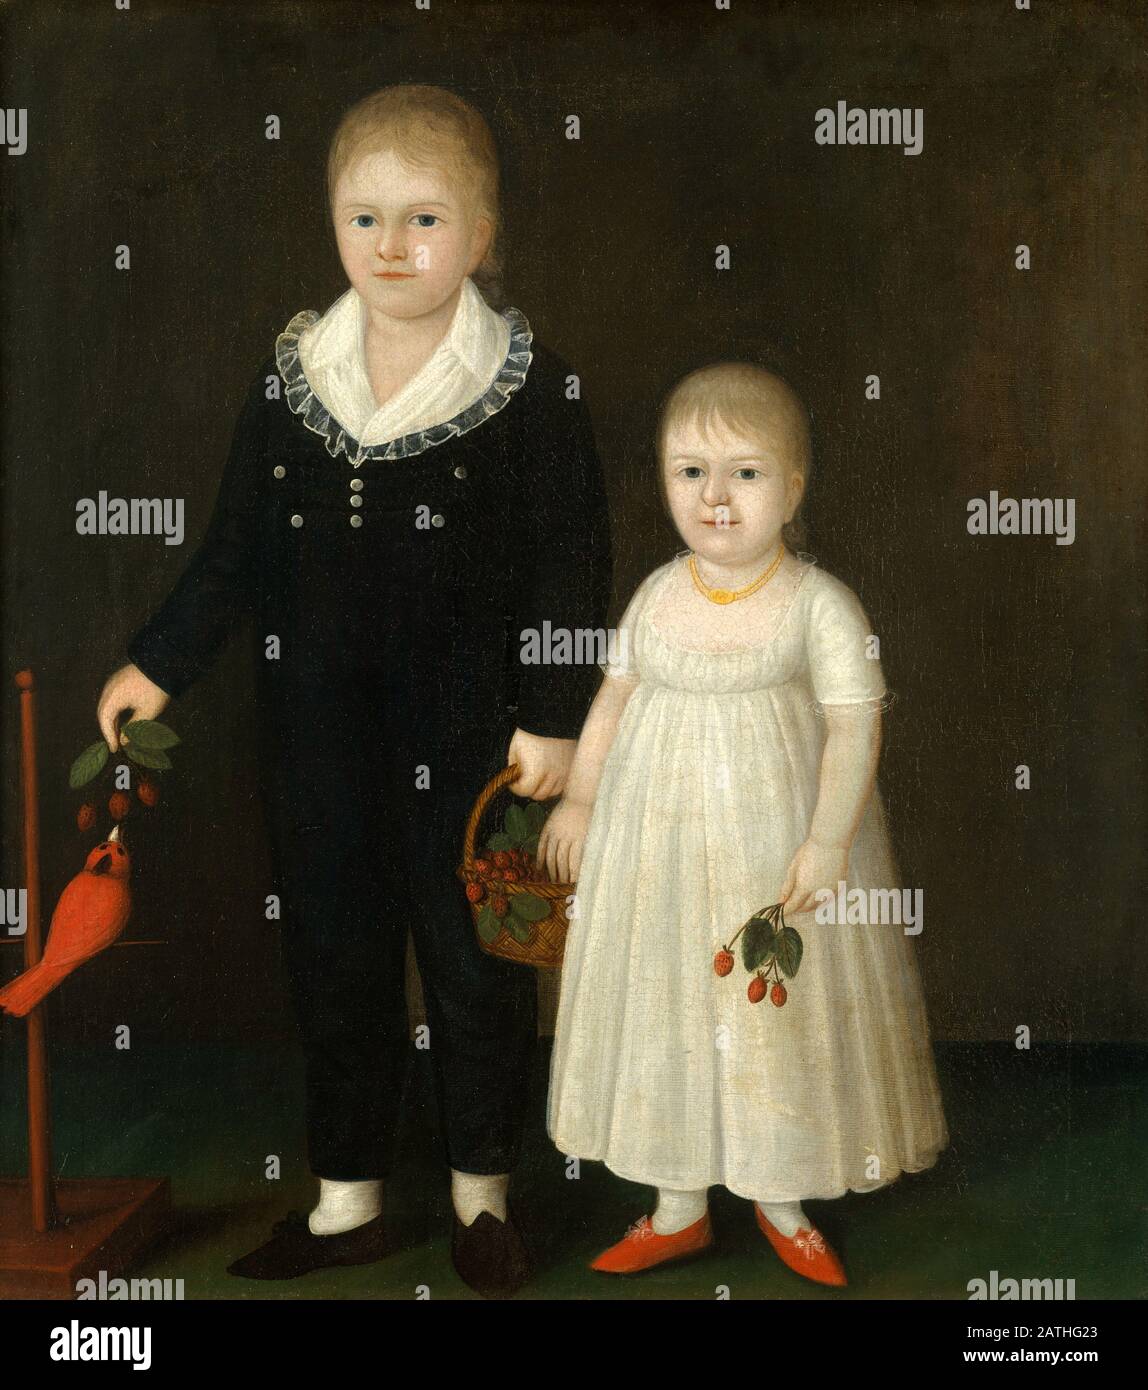 Joshua Johnson American School Edward et Sarah Rutter c. 1805 huile sur toile (91,4 x 81,3 cm) New York, Le Metropolitan Museum of Art Banque D'Images